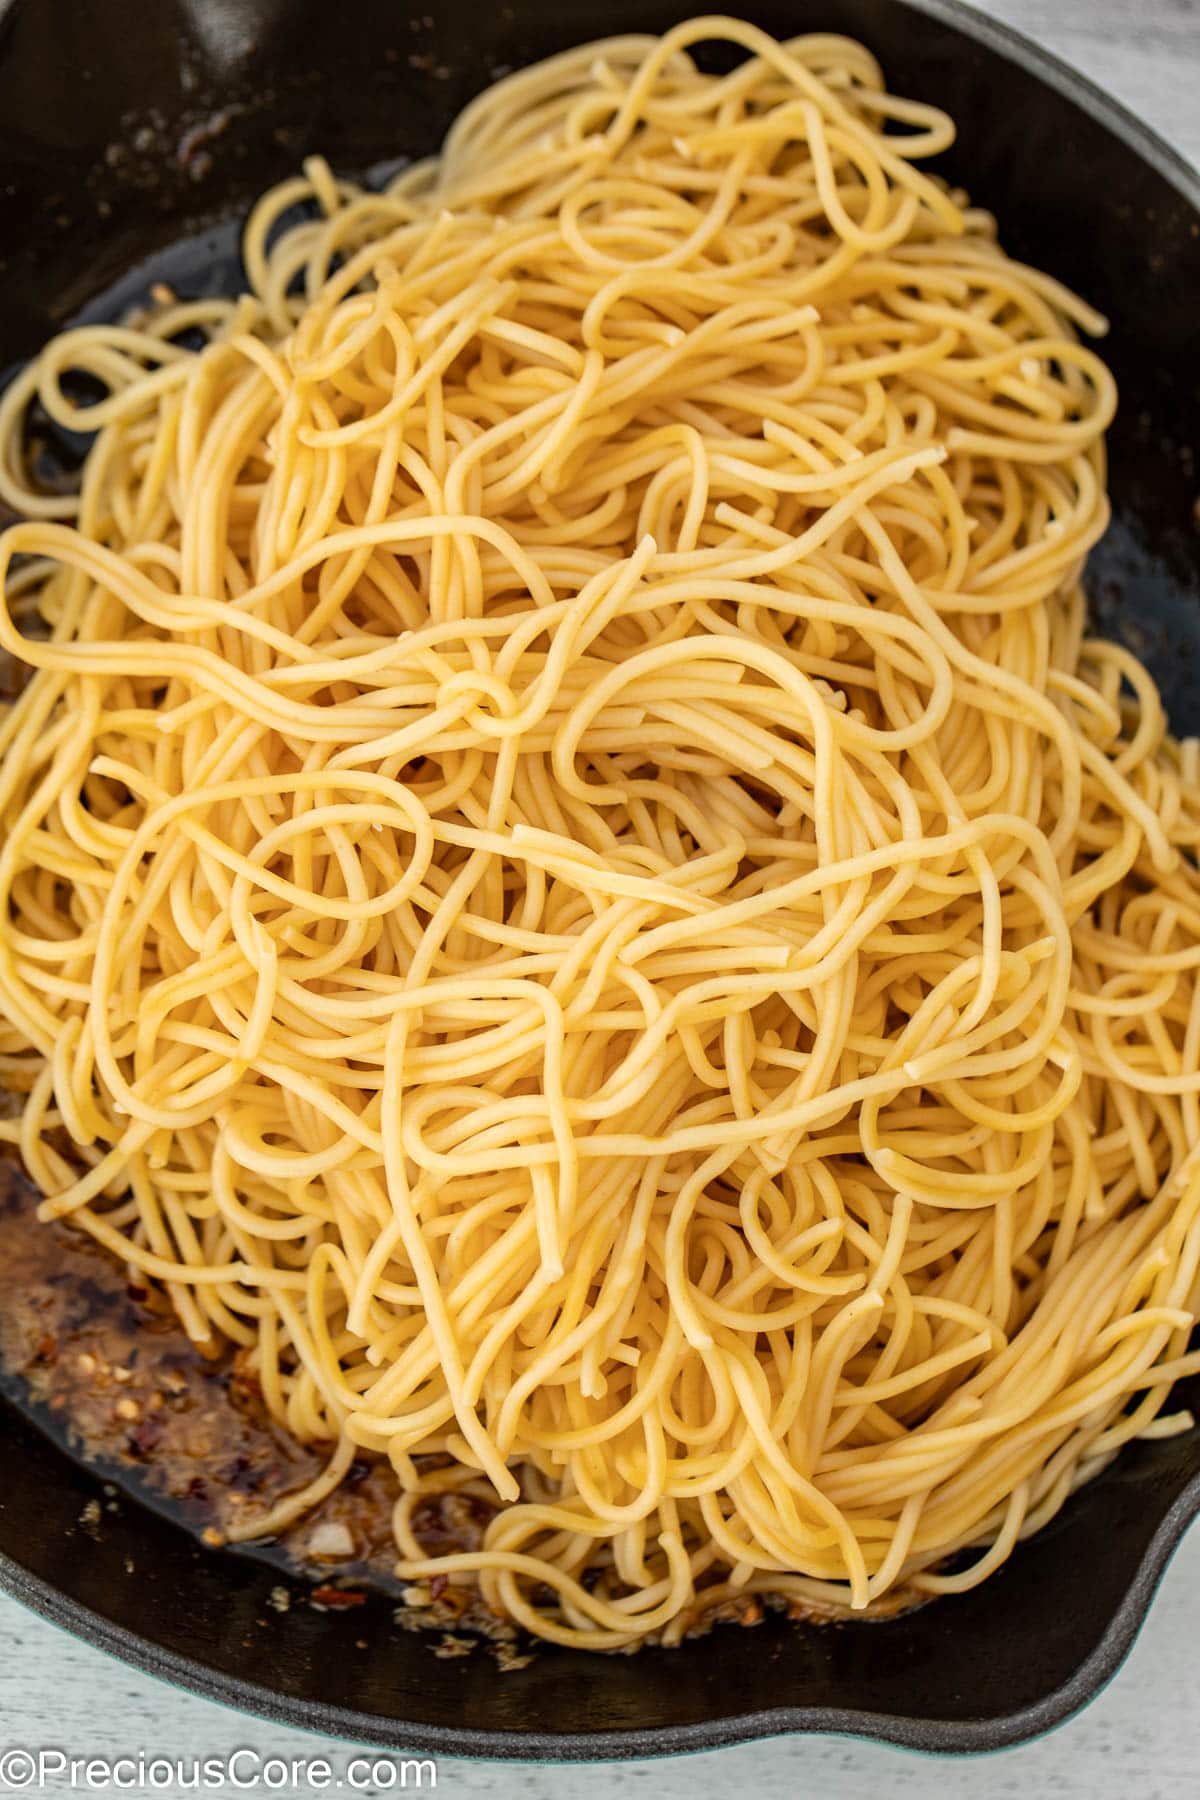 Spaghetti in cast iron pan with garlic sauce.